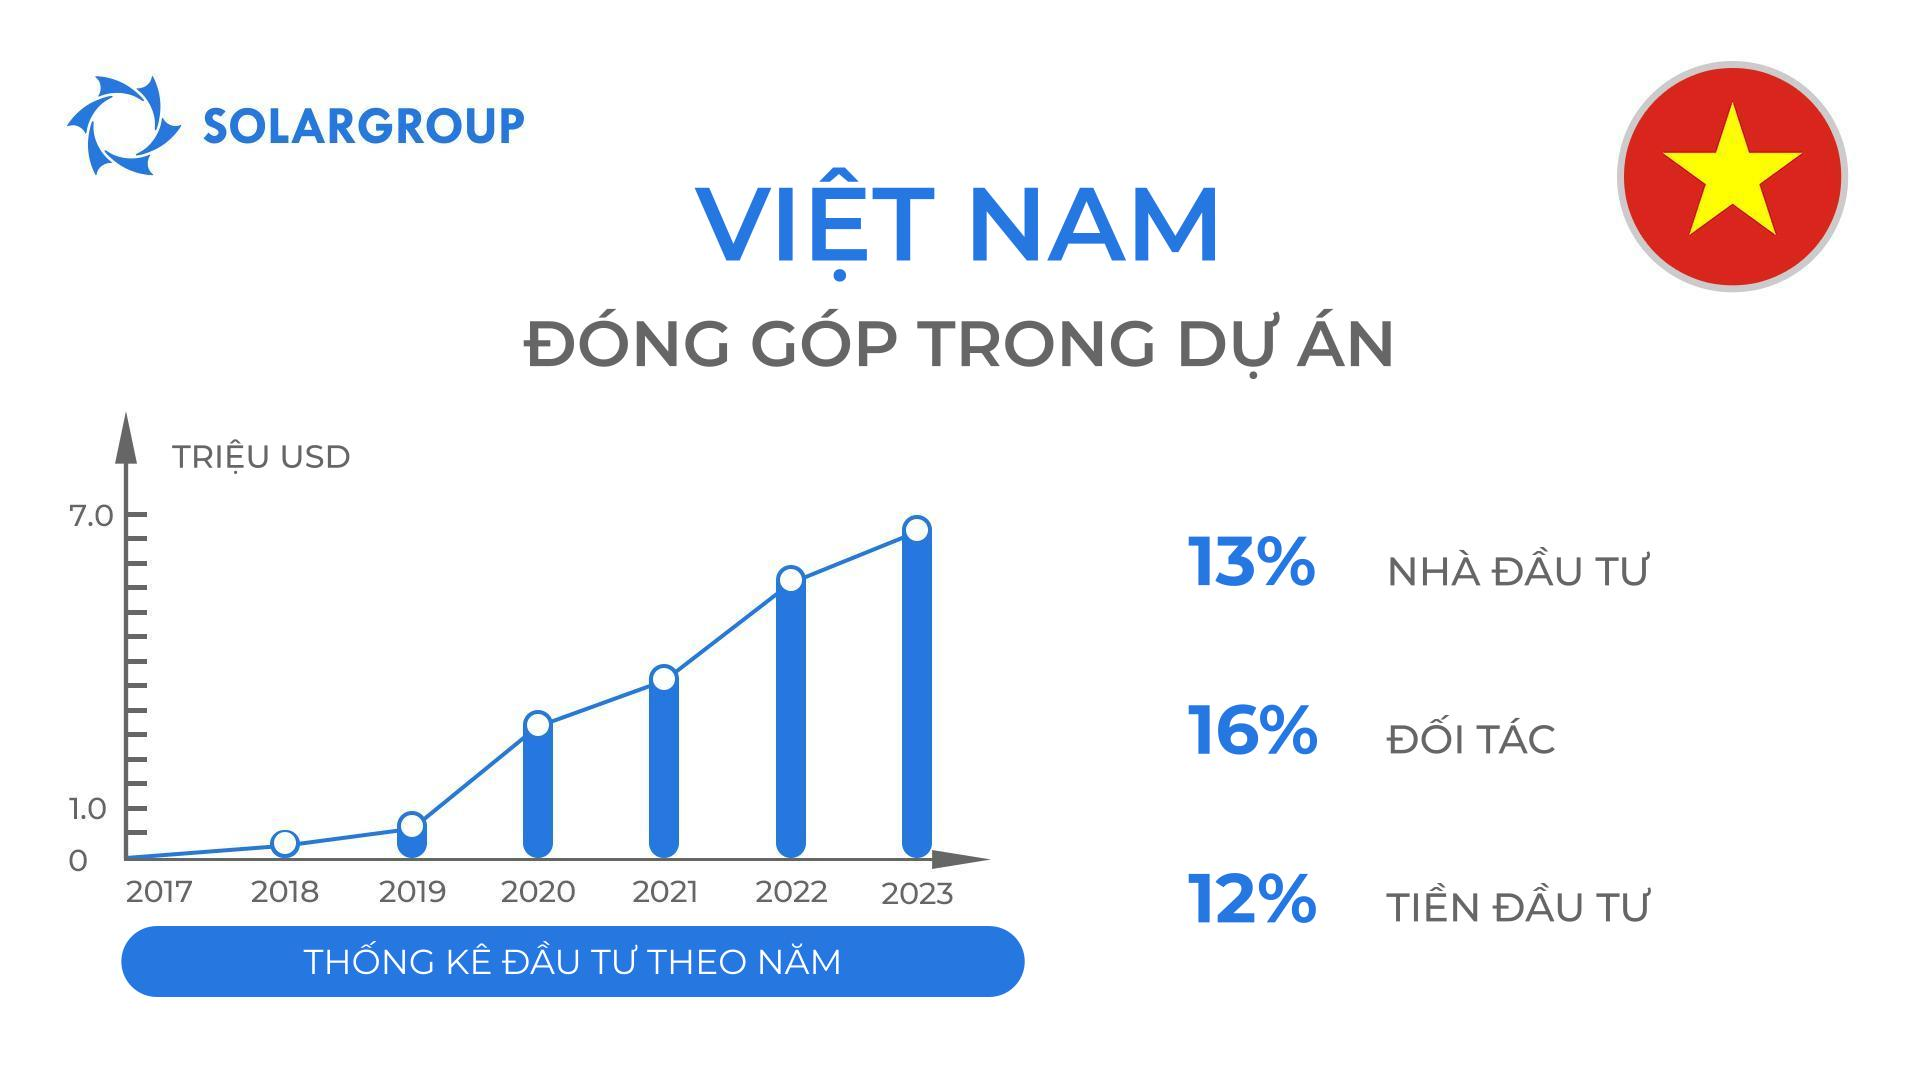 Quốc gia trong dự án "Động cơ của Duyunov": Việt Nam